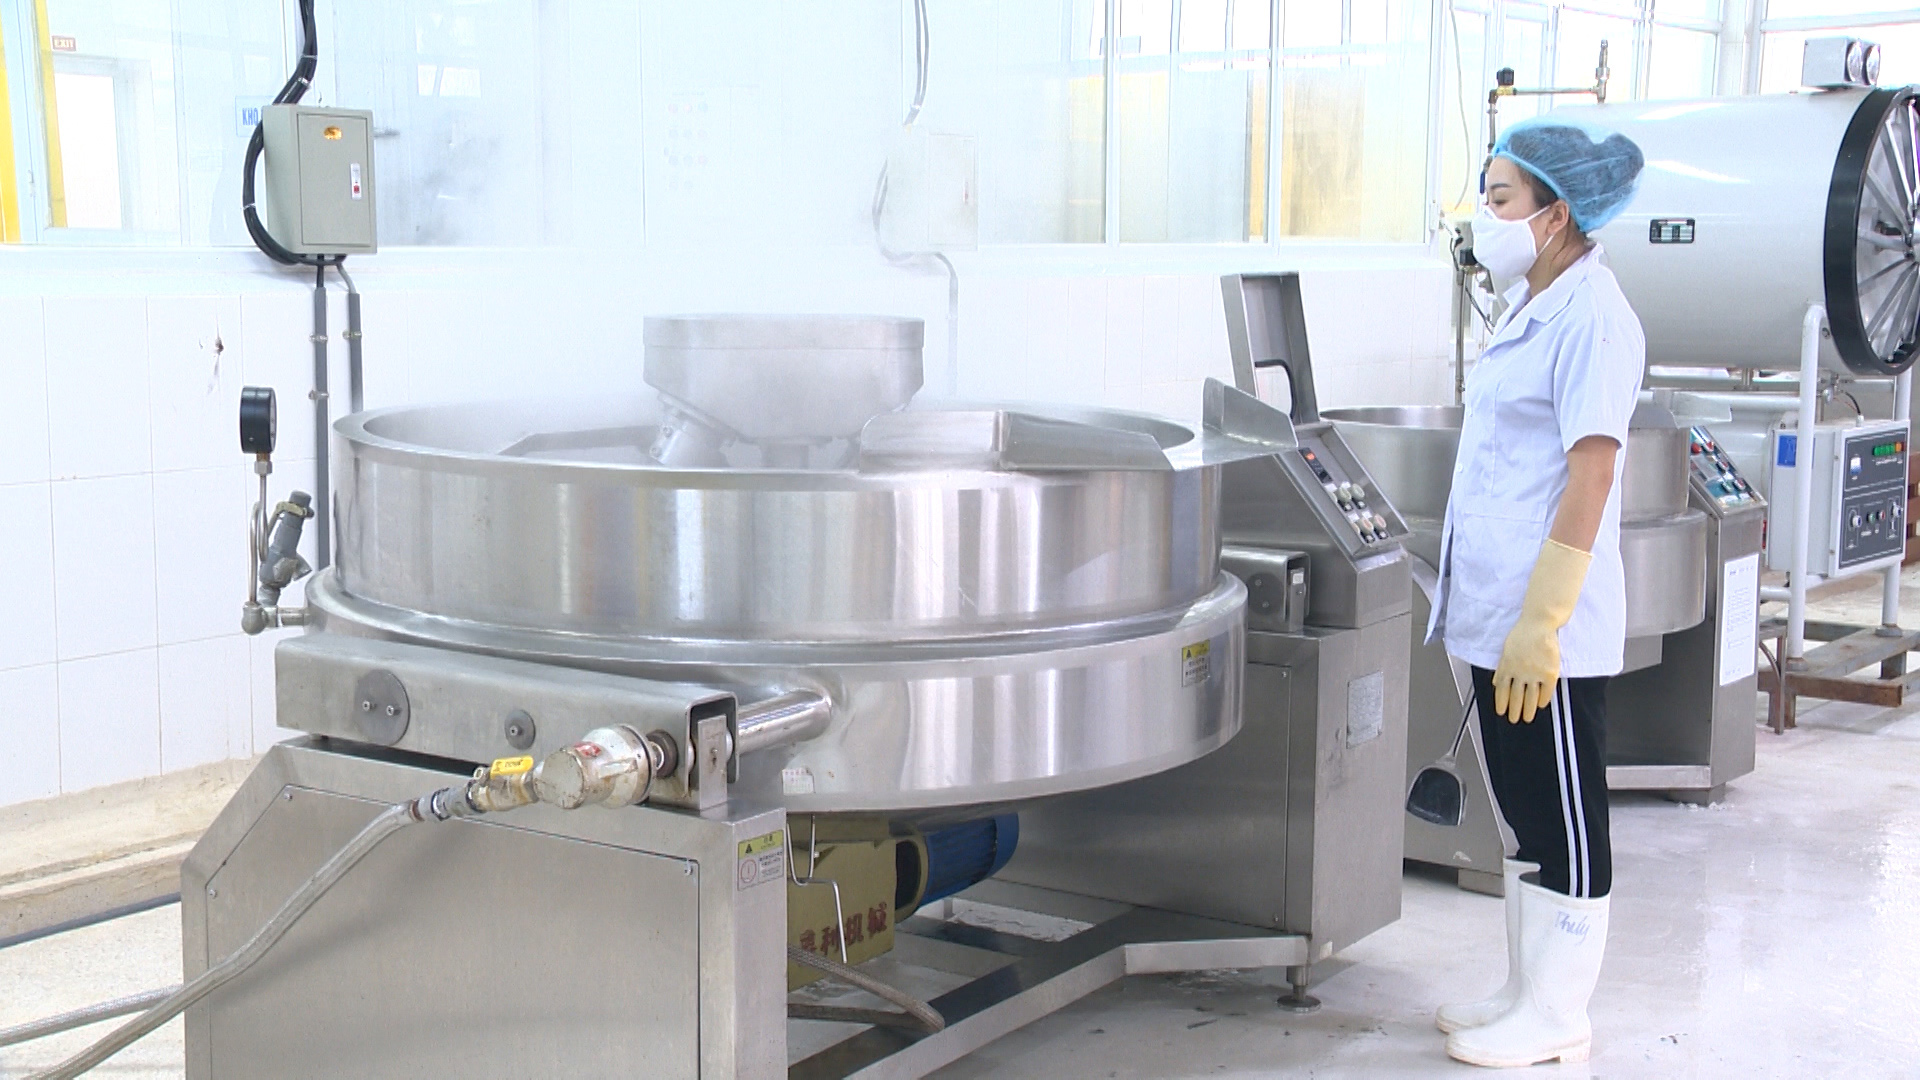 Công ty TNHH Sản xuất và Thương mại thủy sản Quảng Ninh đầu tư thiết bị hiện đại trong chế biến sản phẩm. Ảnh: Minh Đức